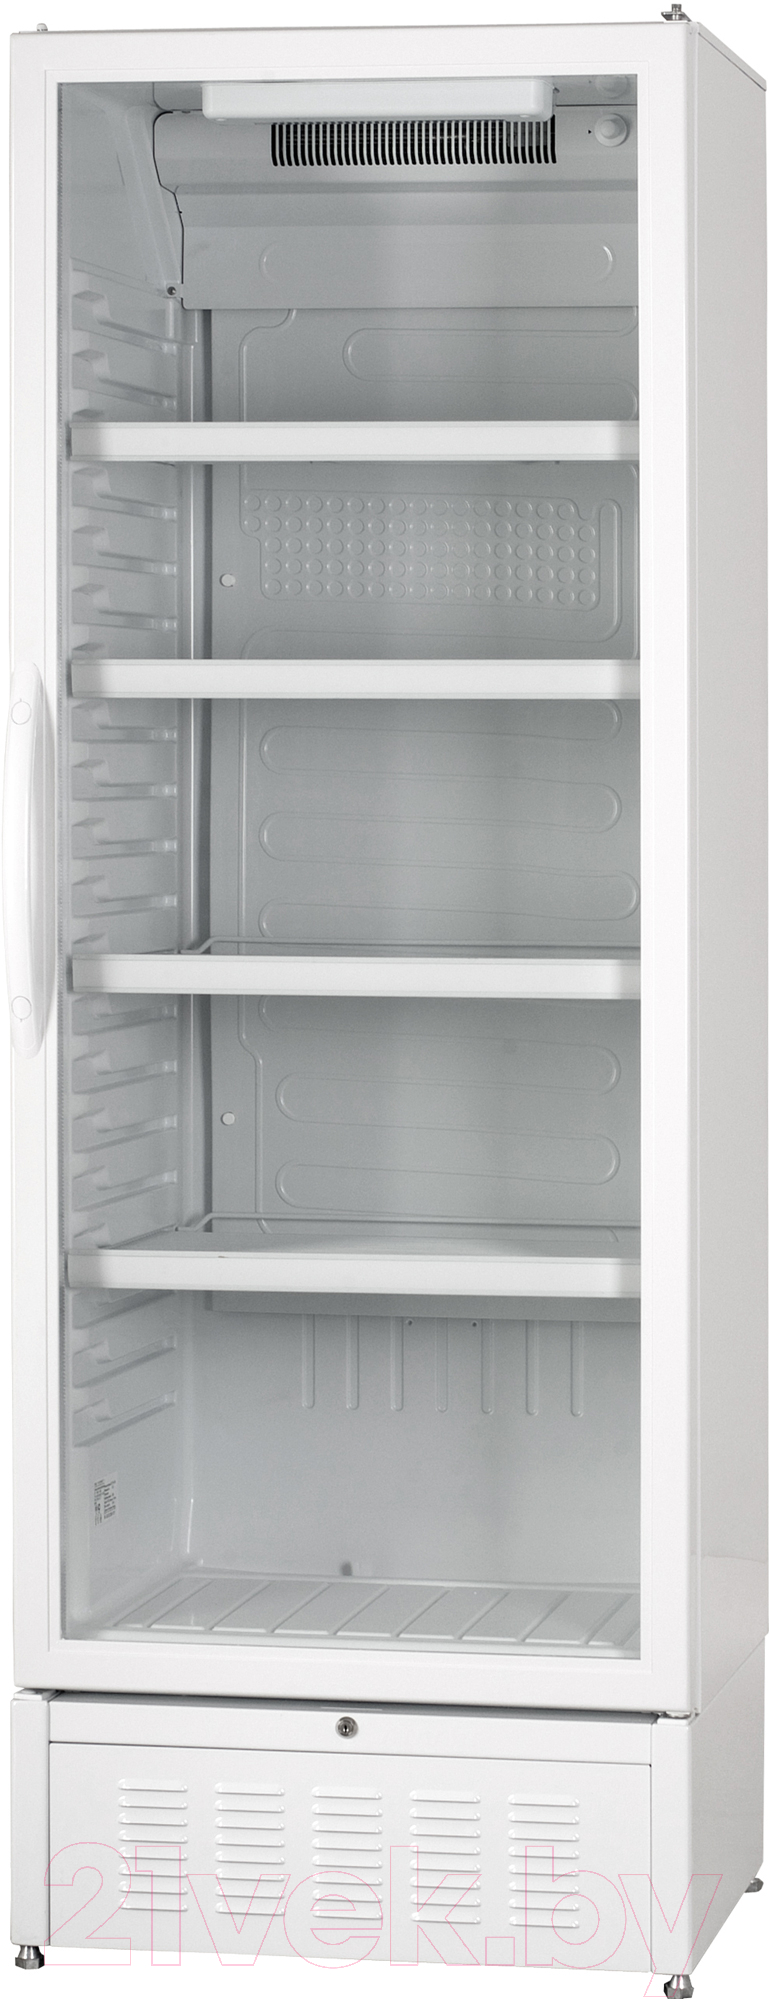 Торговый холодильник ATLANT ХТ 1006-024